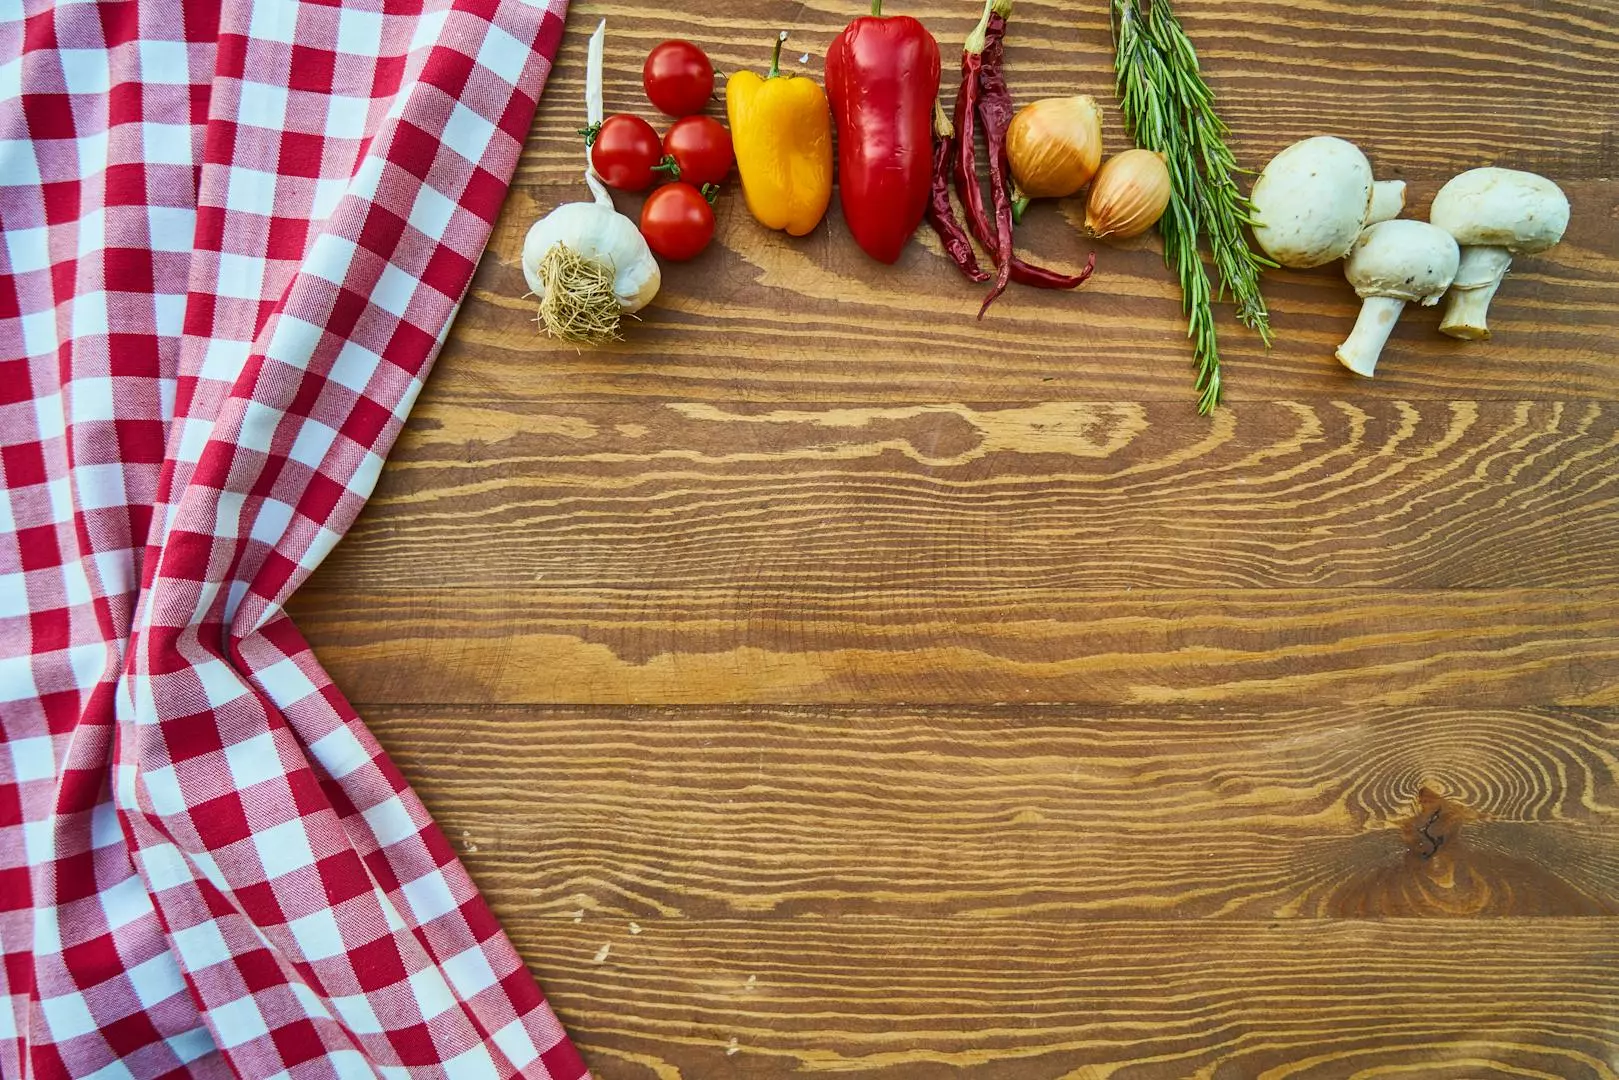 Utforsk Spennende Oppskrifter og Tips på Din Blogg om Mat